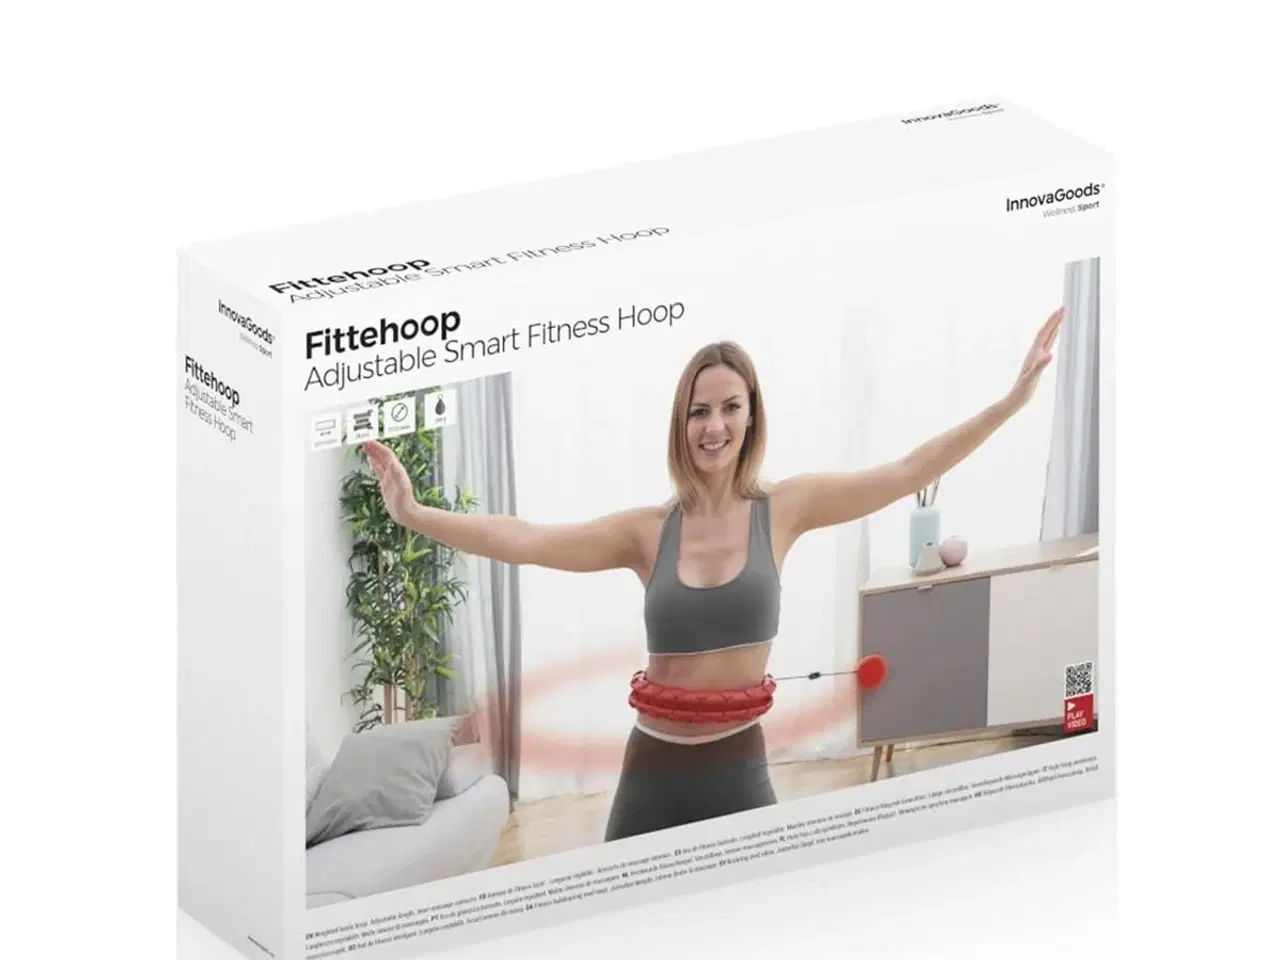 Billede 2 - Justerbar Smart Fitness Hoop med vægt Fittehoop InnovaGoods